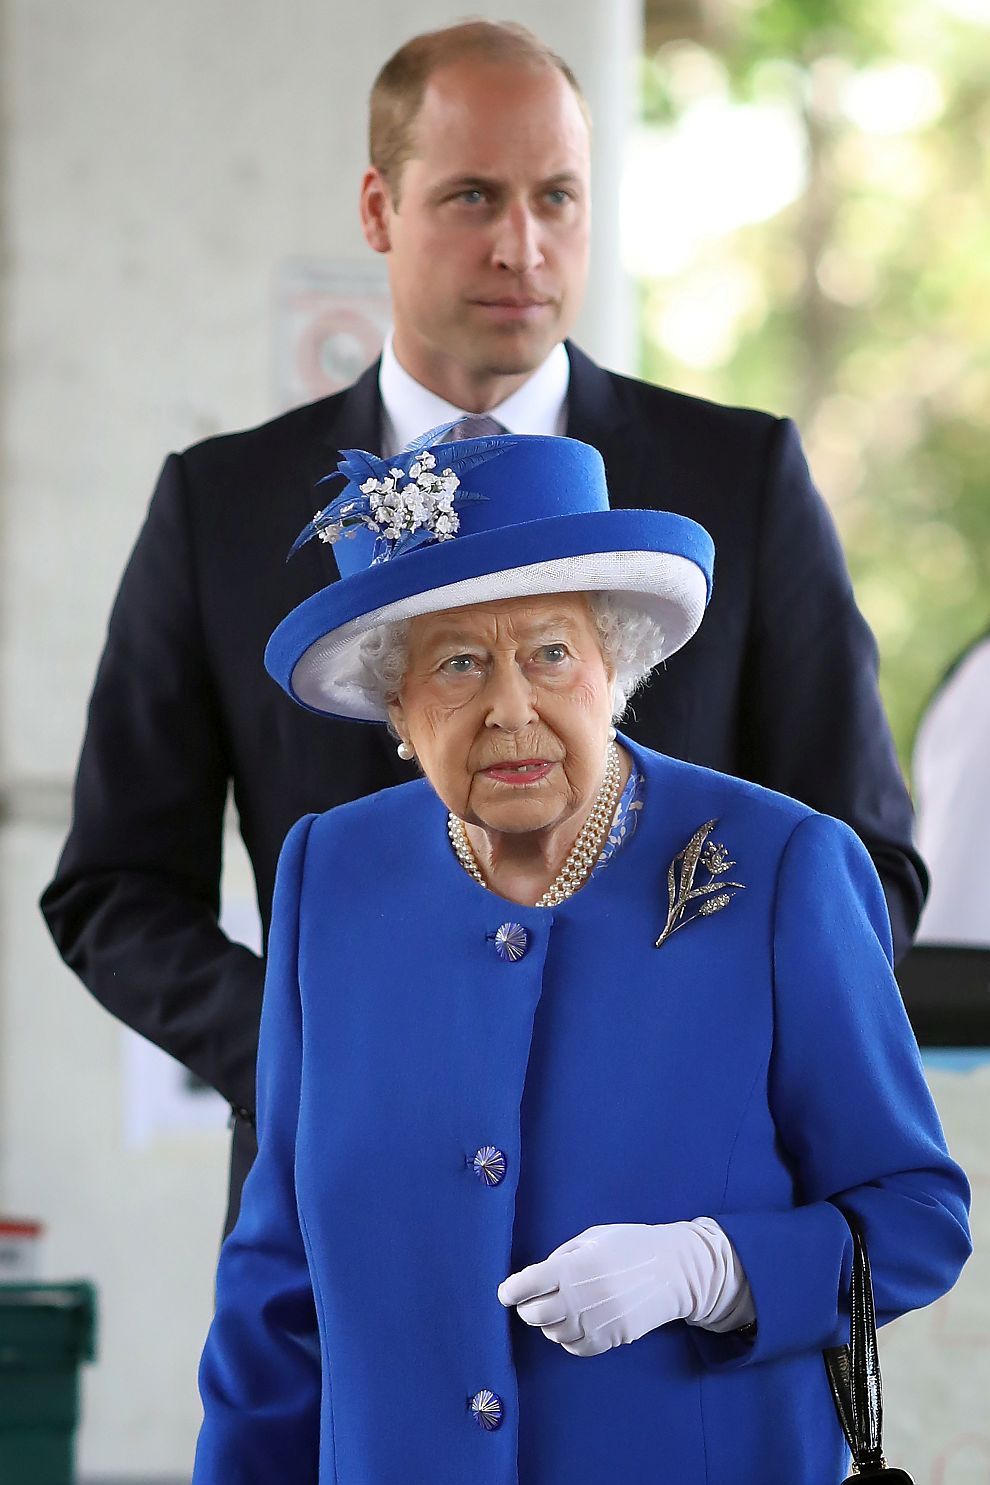 Британската кралица Елизабет Втора и принц Уилям пристигнаха в района на опожарения жилищен блок в Лондон.